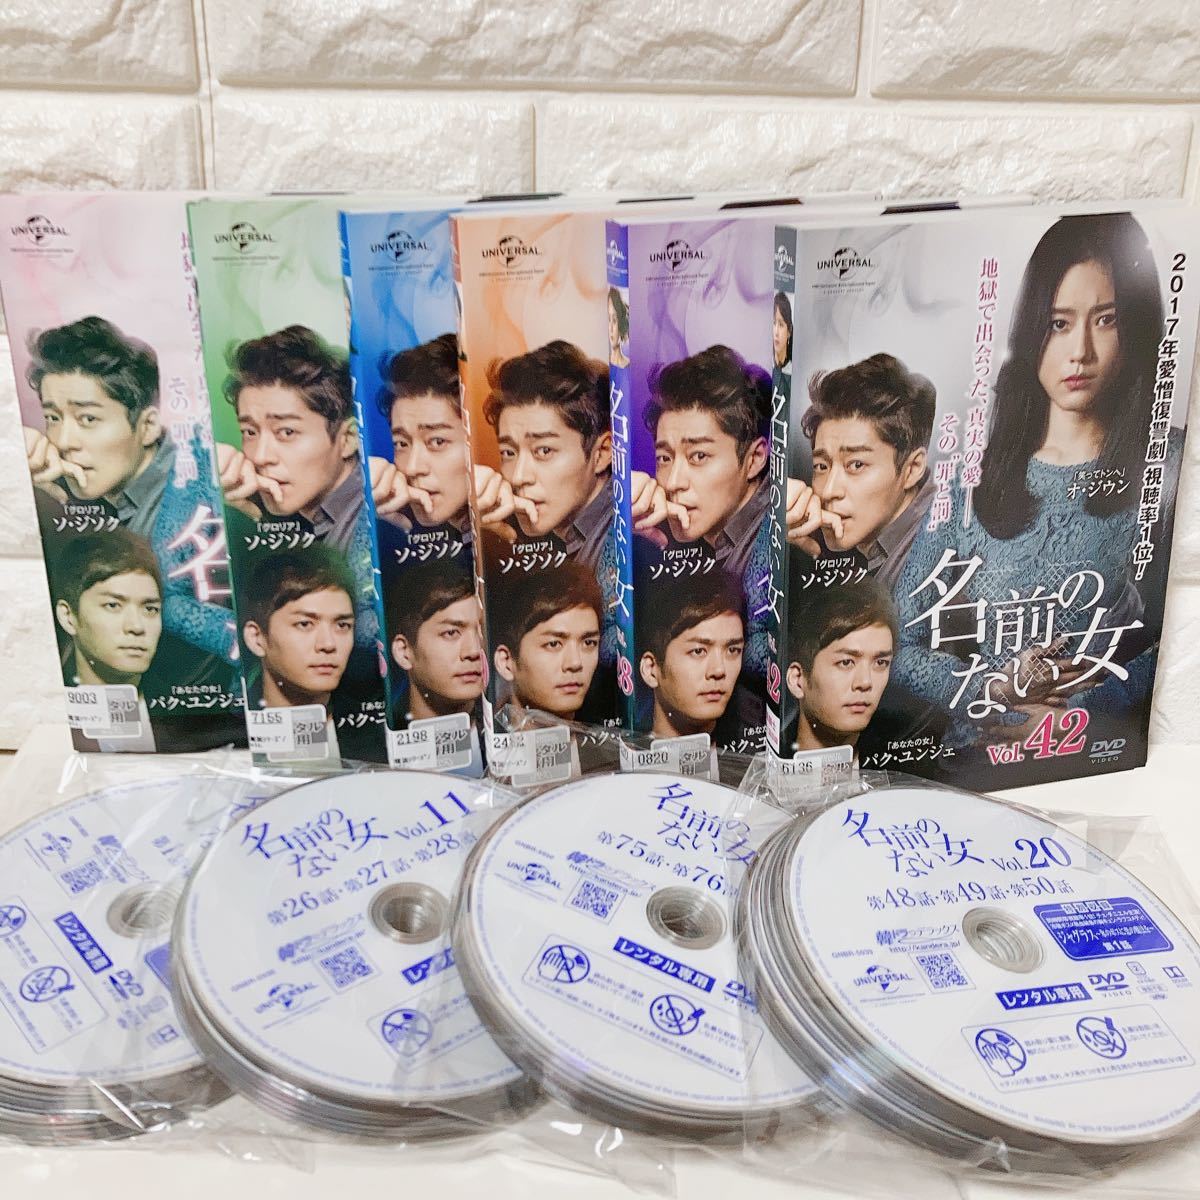 名前のない女 DVD 全巻 全話 韓国 ドラマ 人気 愛憎 復讐 視聴率1位 韓流